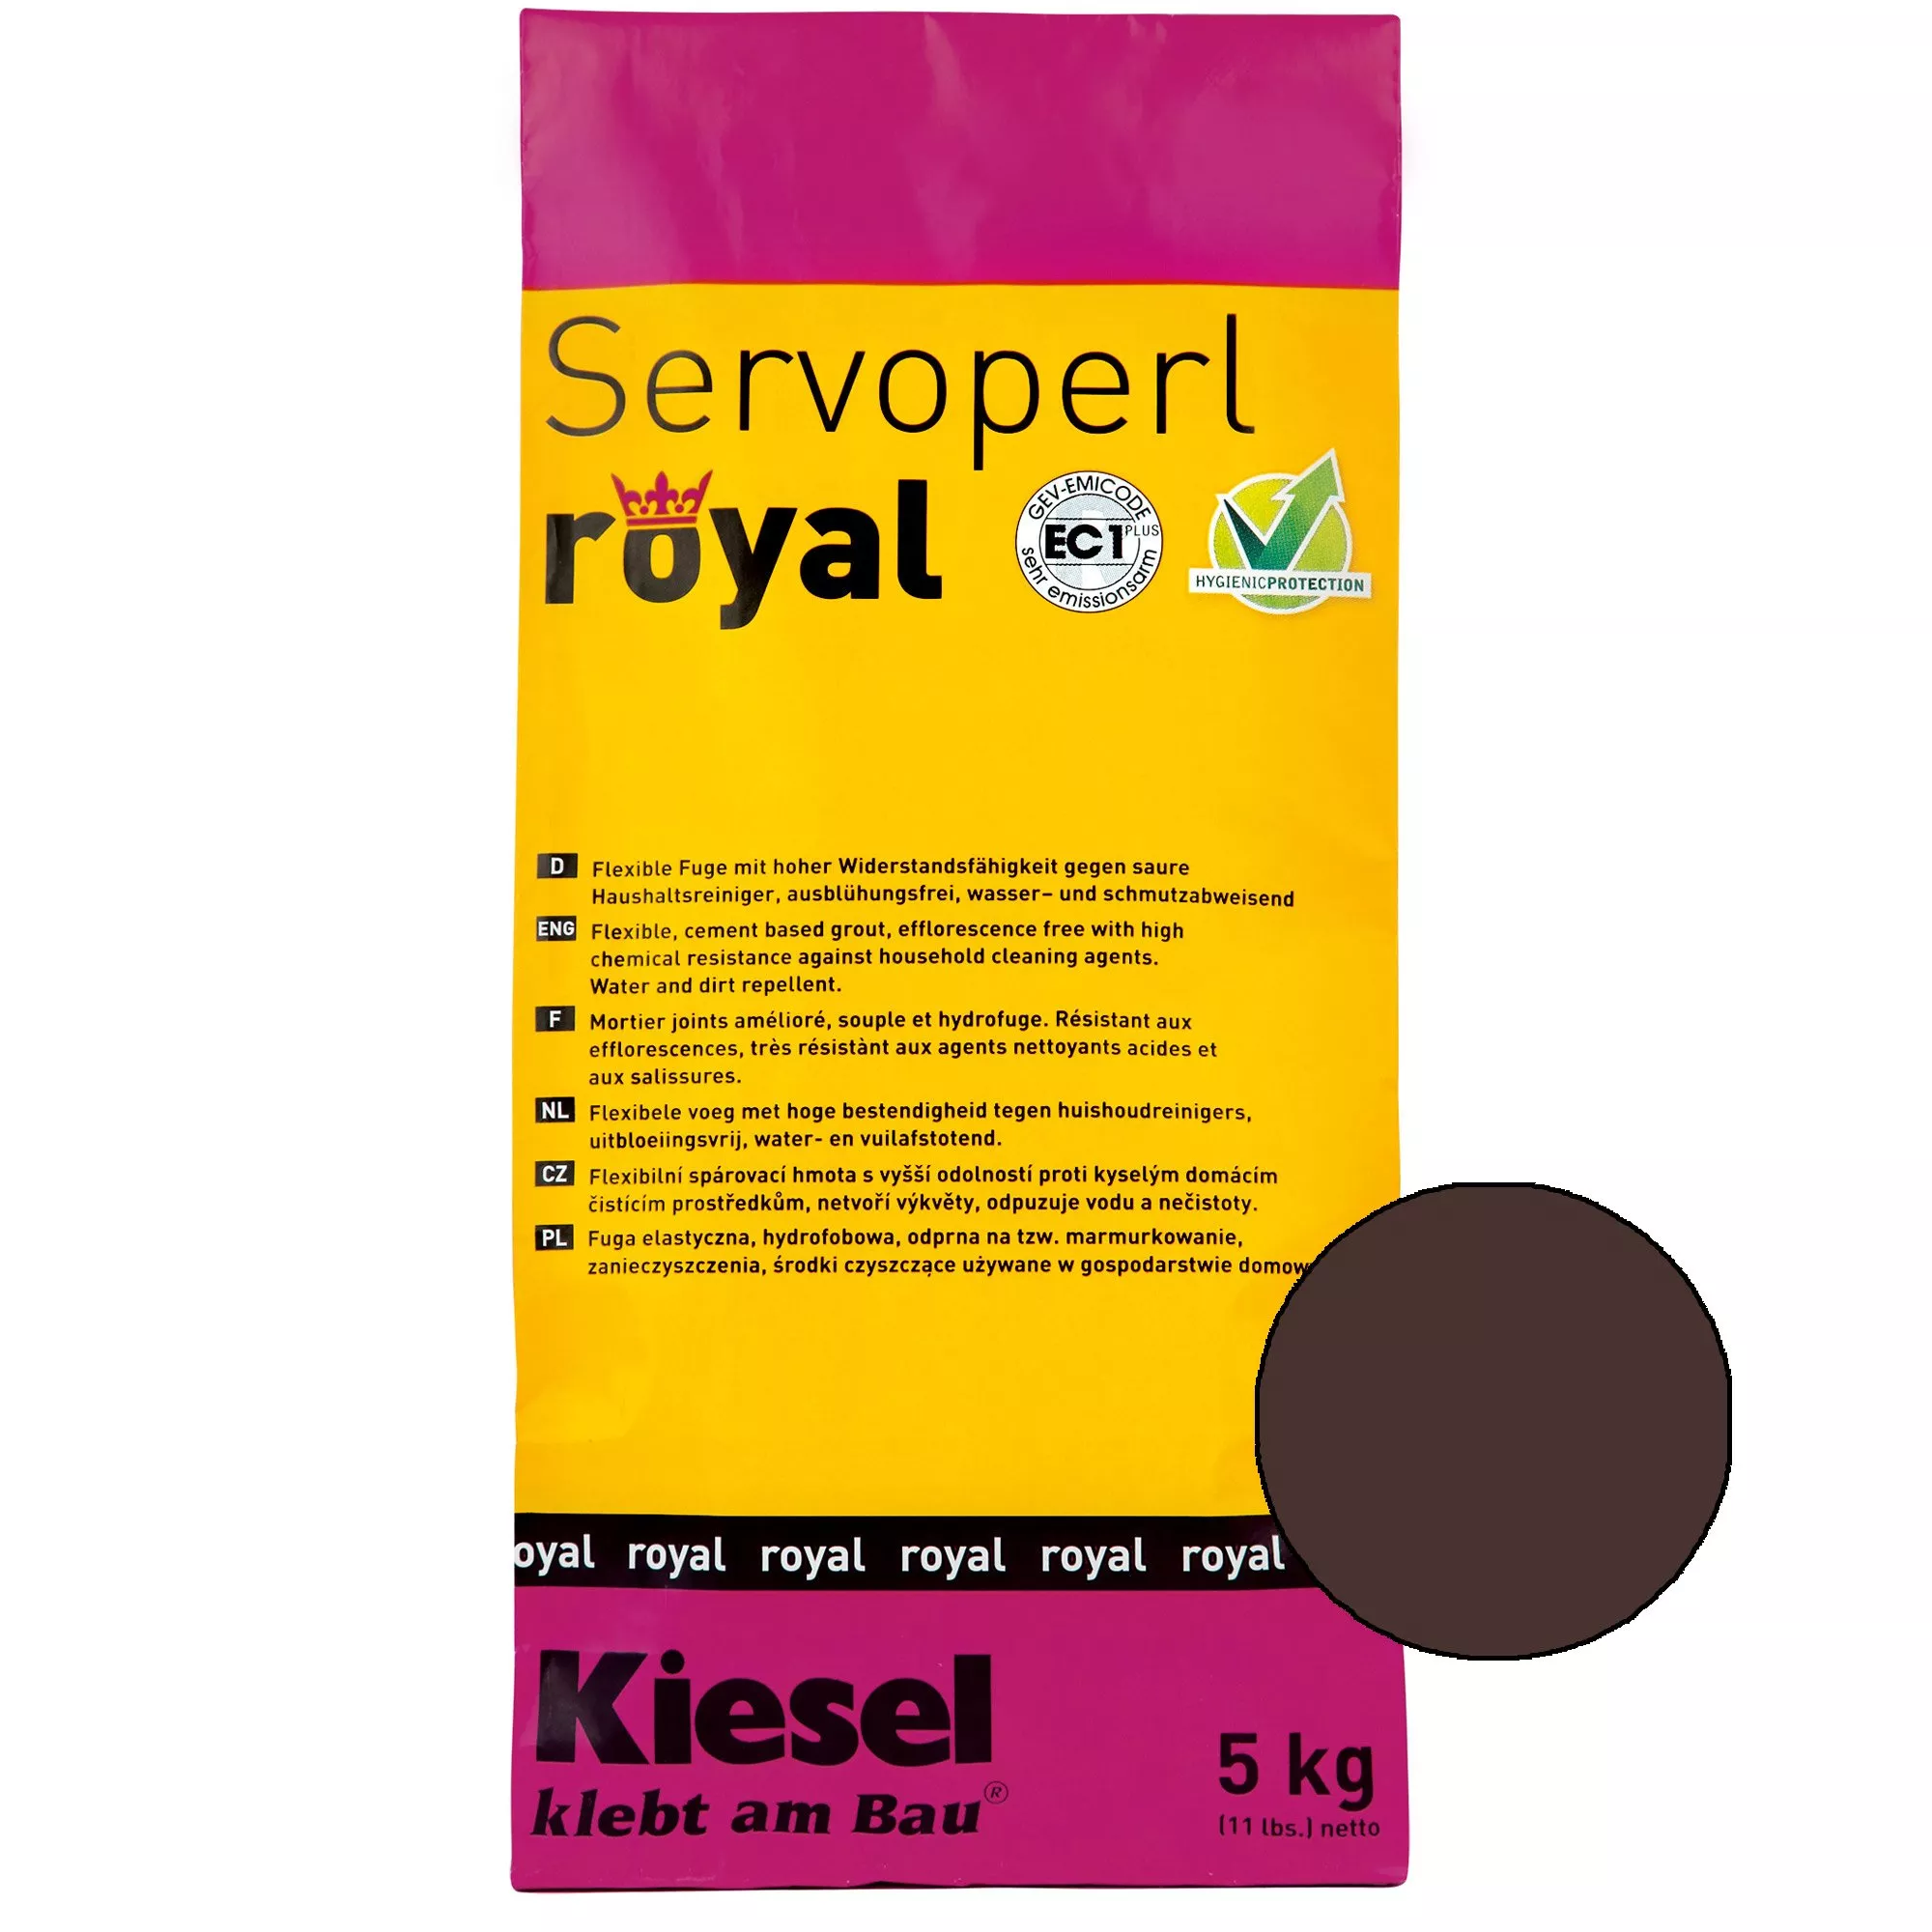 Kiesel Servoperl royal - Rugalmas, víz- és szennyeződéstaszító kötés